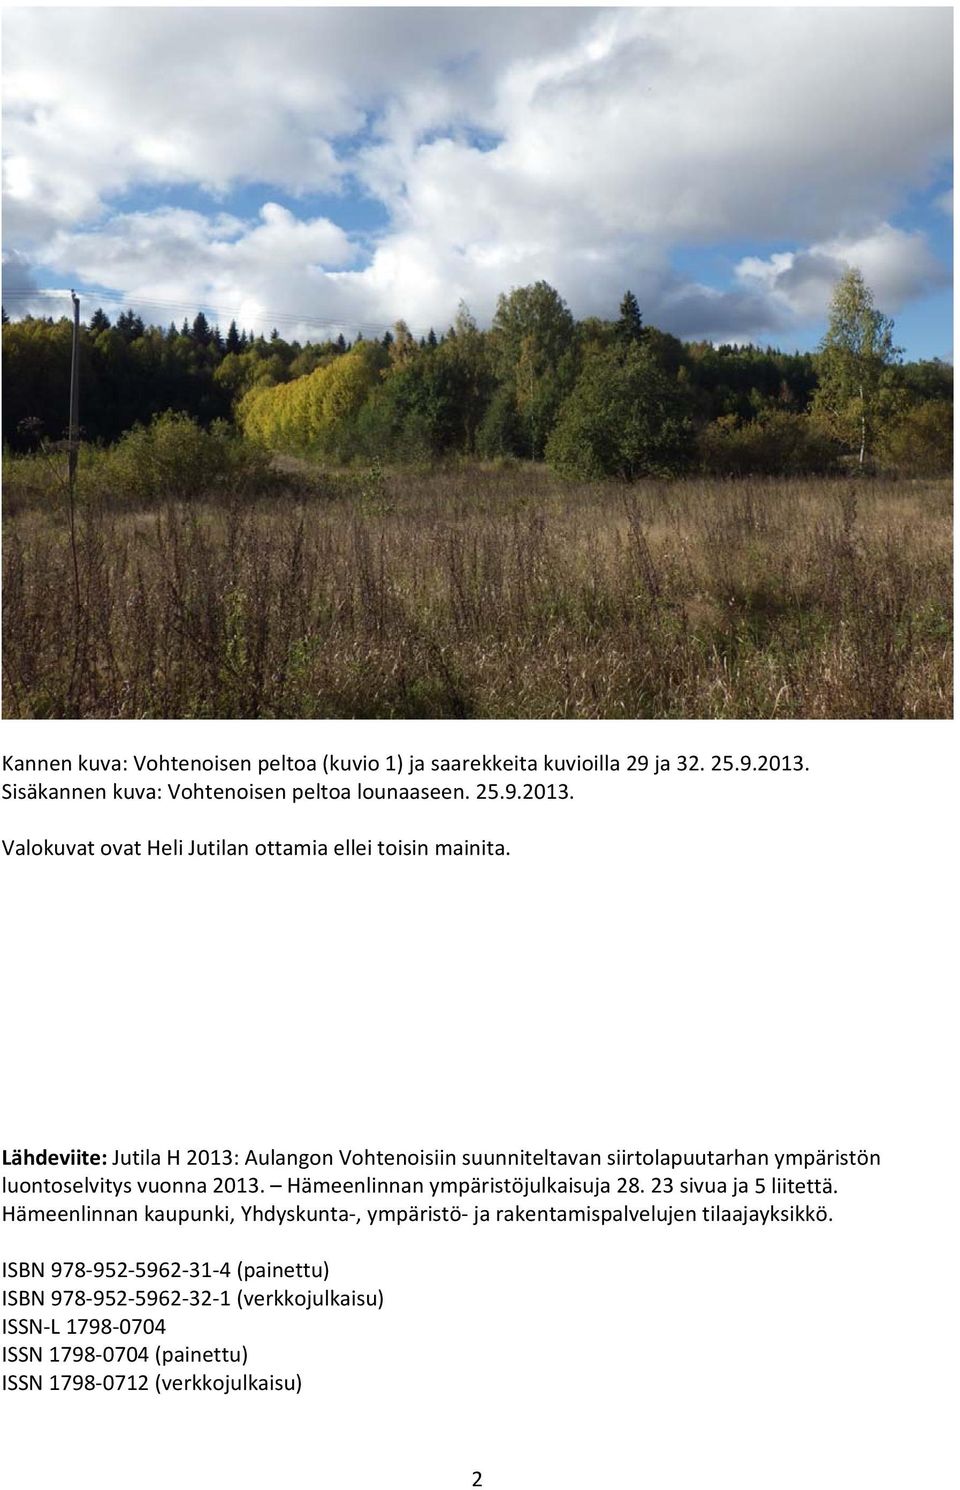 Hämeenlinnan ympäristöjulkaisuja 28. 23 sivua ja 5 liitettä. Hämeenlinnan kaupunki, Yhdyskunta, ympäristö ja rakentamispalvelujen tilaajayksikkö.